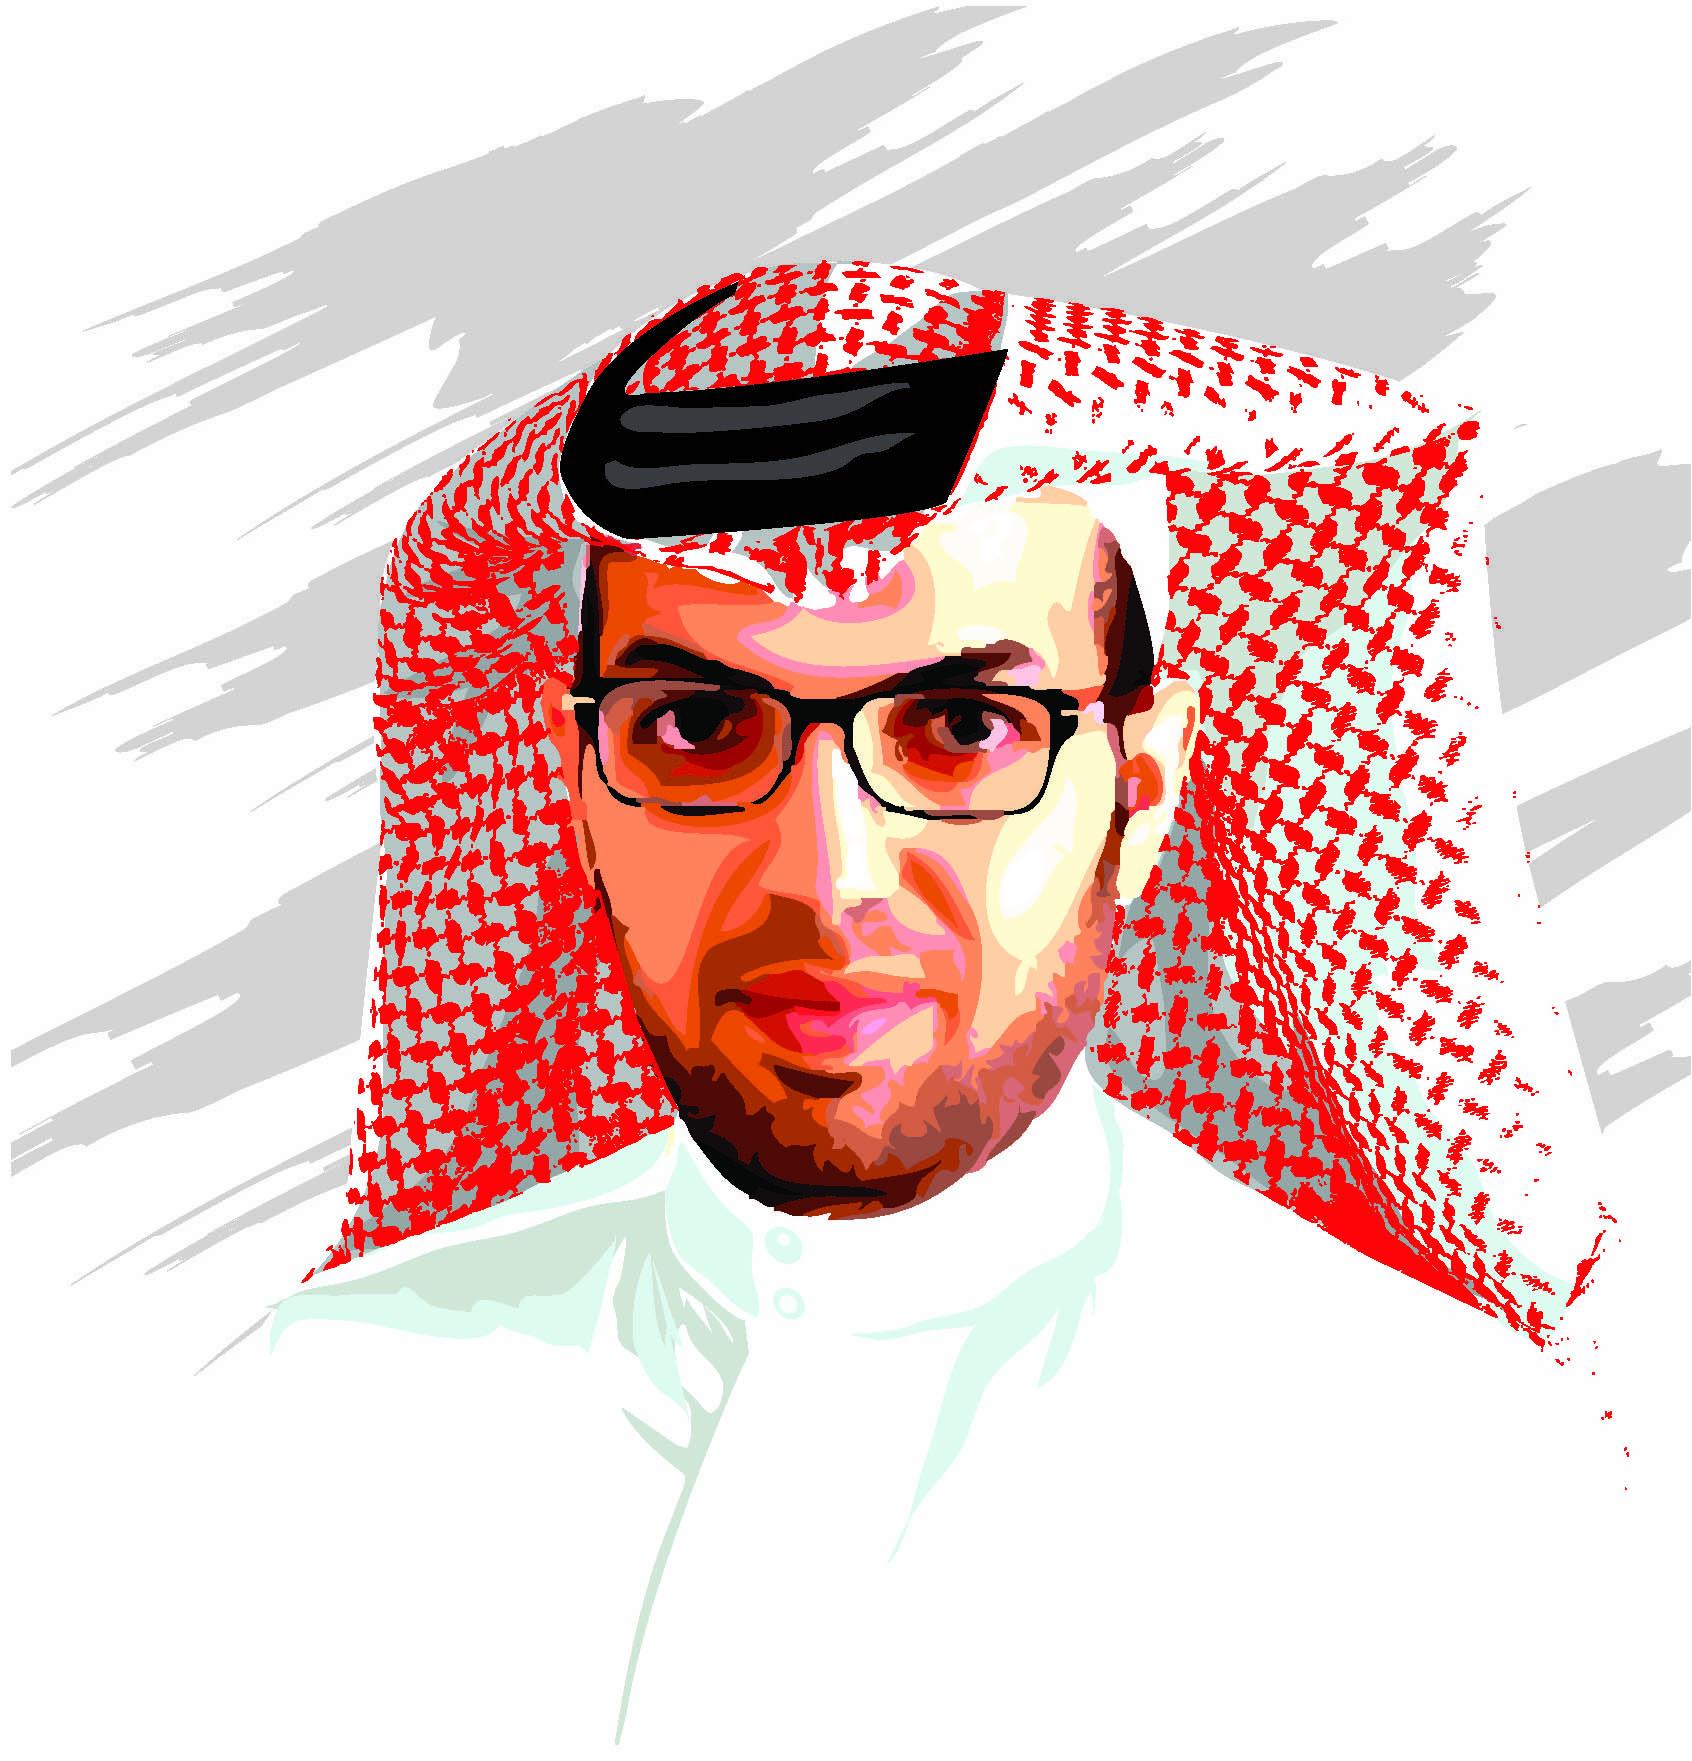 Saudi Arabia: Kingdom of Humanity